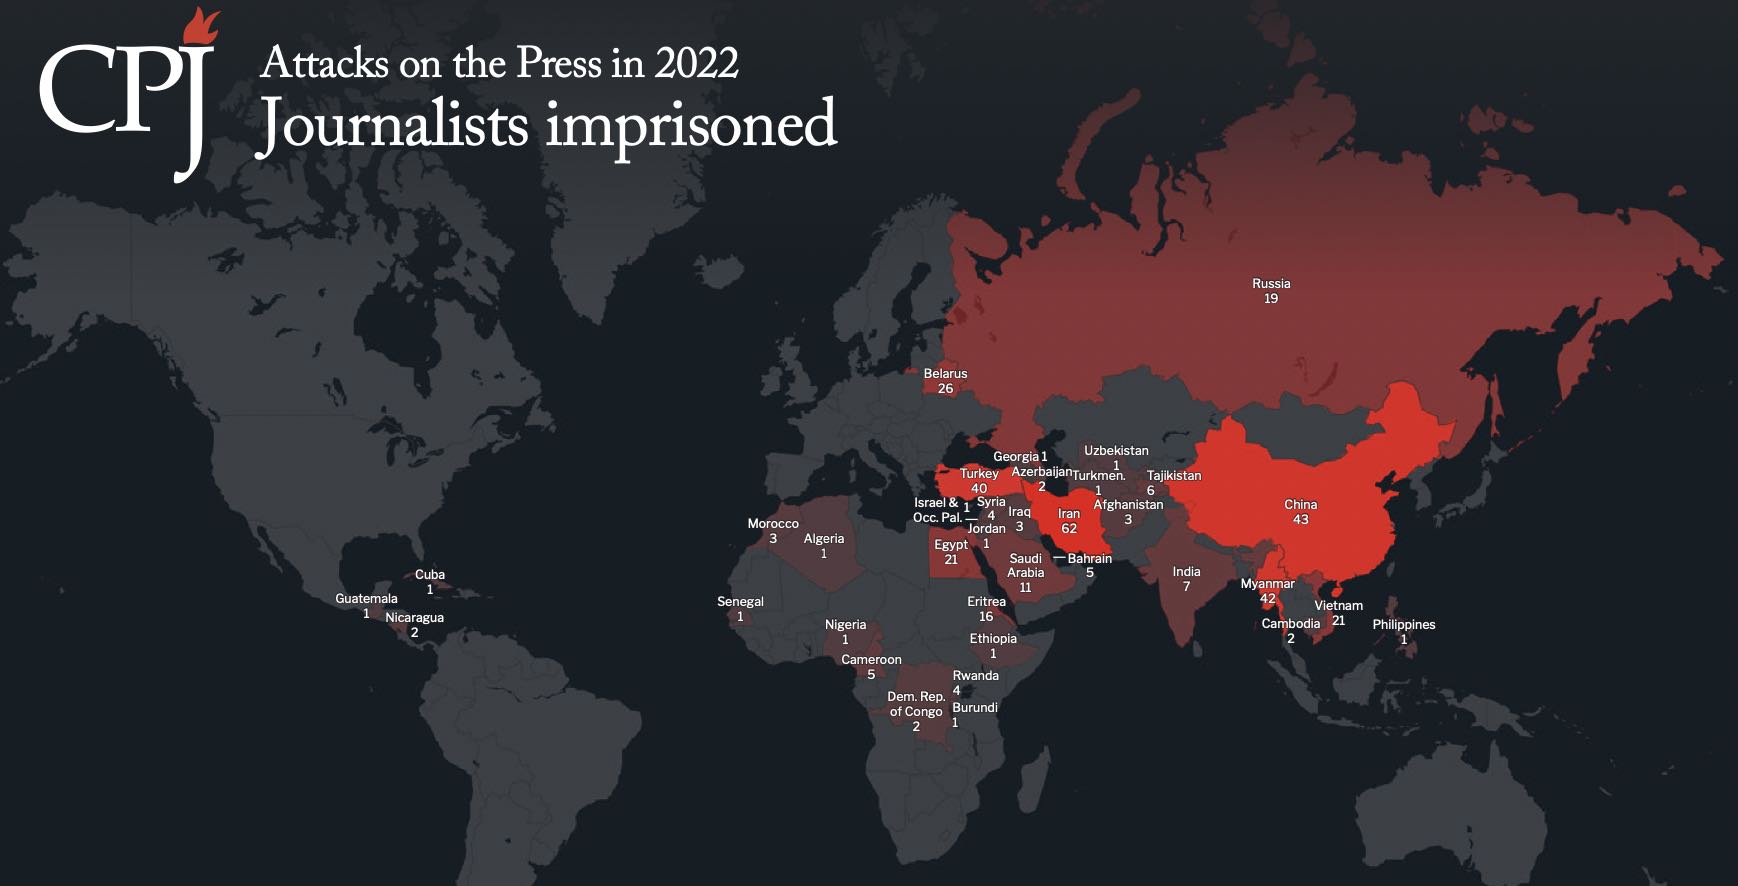 CPJ jornailstas presos